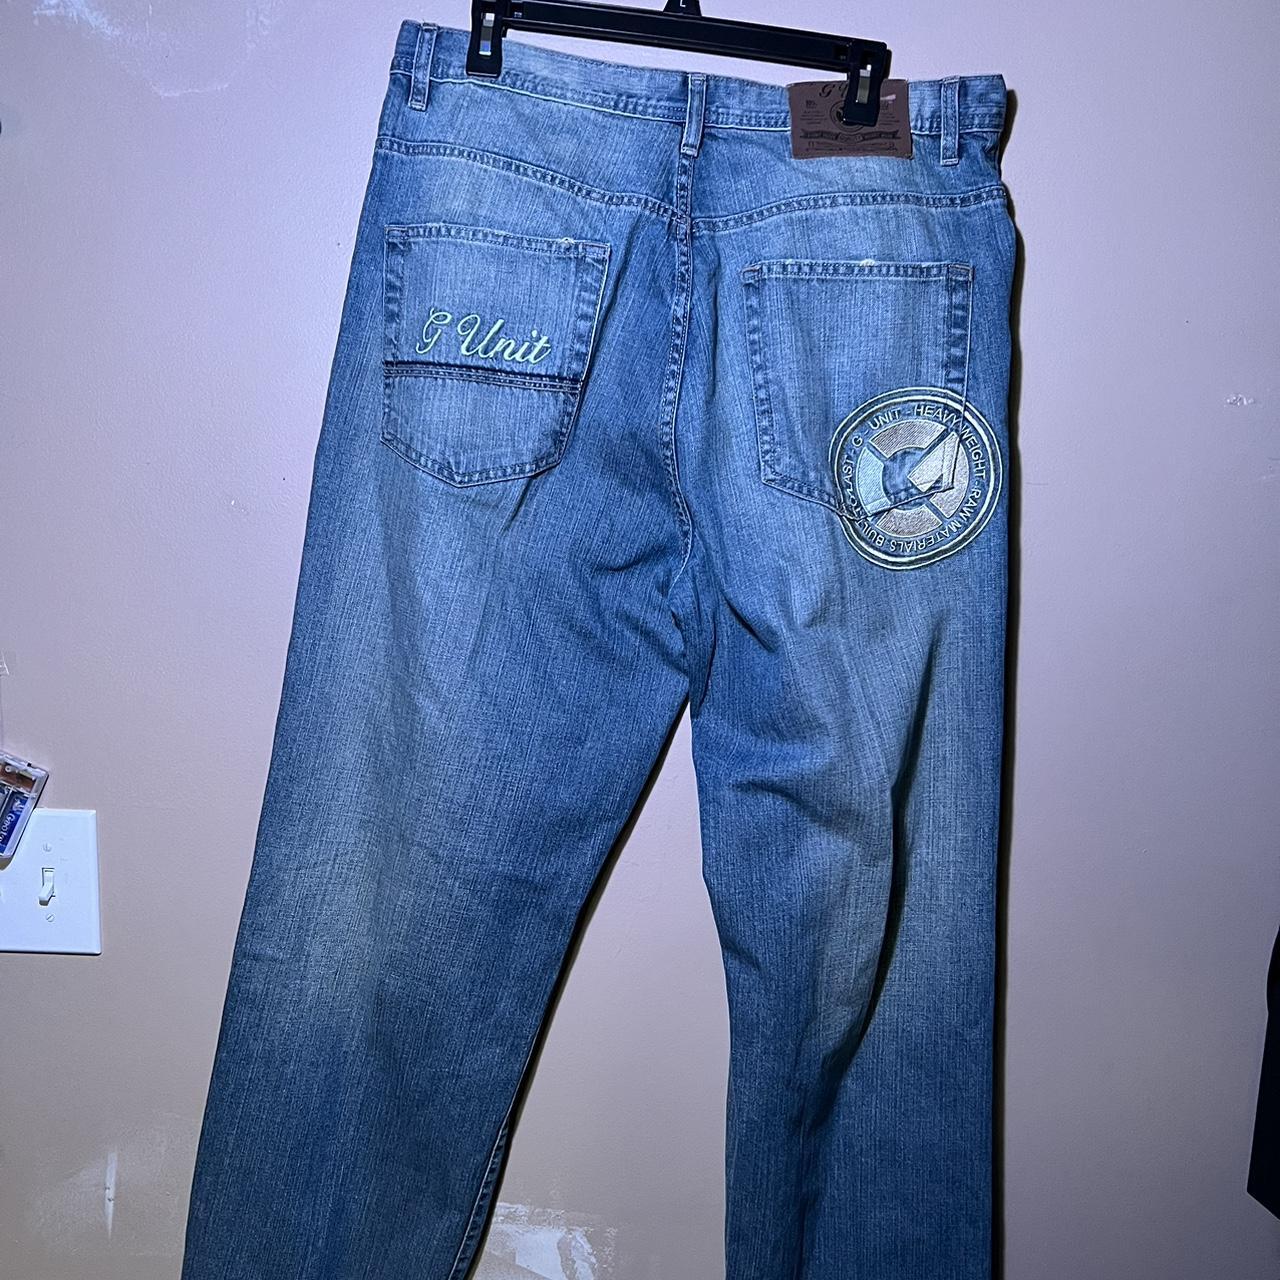 authentic G-unit 50 cent 2000s street jeans, Insane...